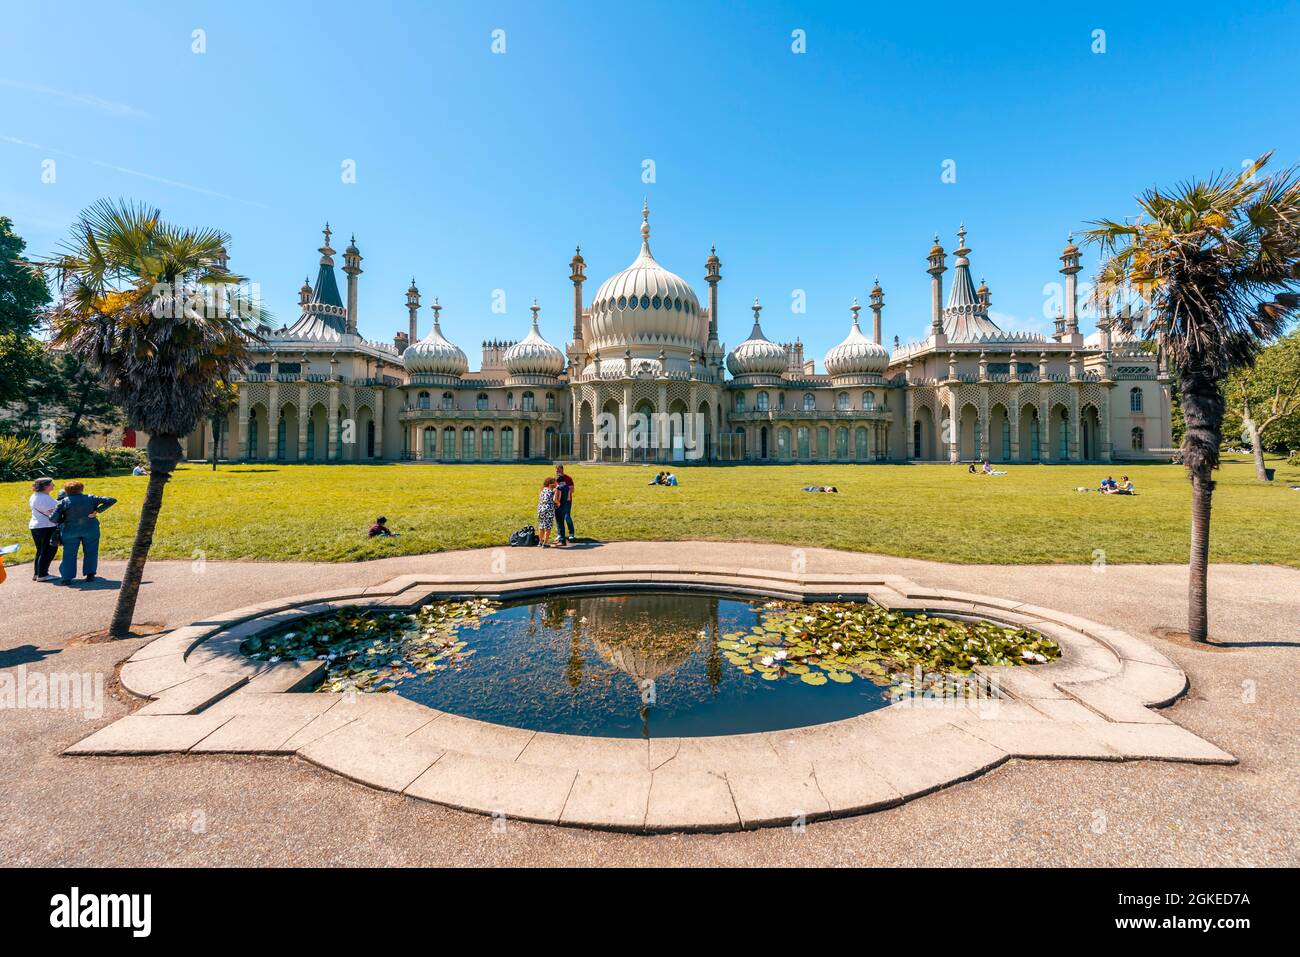 Teich mit Seerosen vor dem Royal Pavilion Palace, Brighton, East Sussex, England, Vereinigtes Königreich Stockfoto